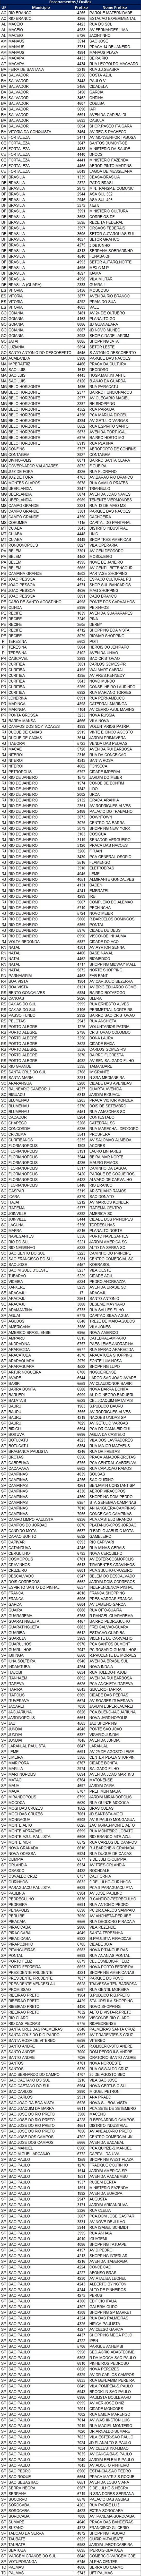 BB: lista de agências que serão fechadas. (Foto: Banco do Brasil)